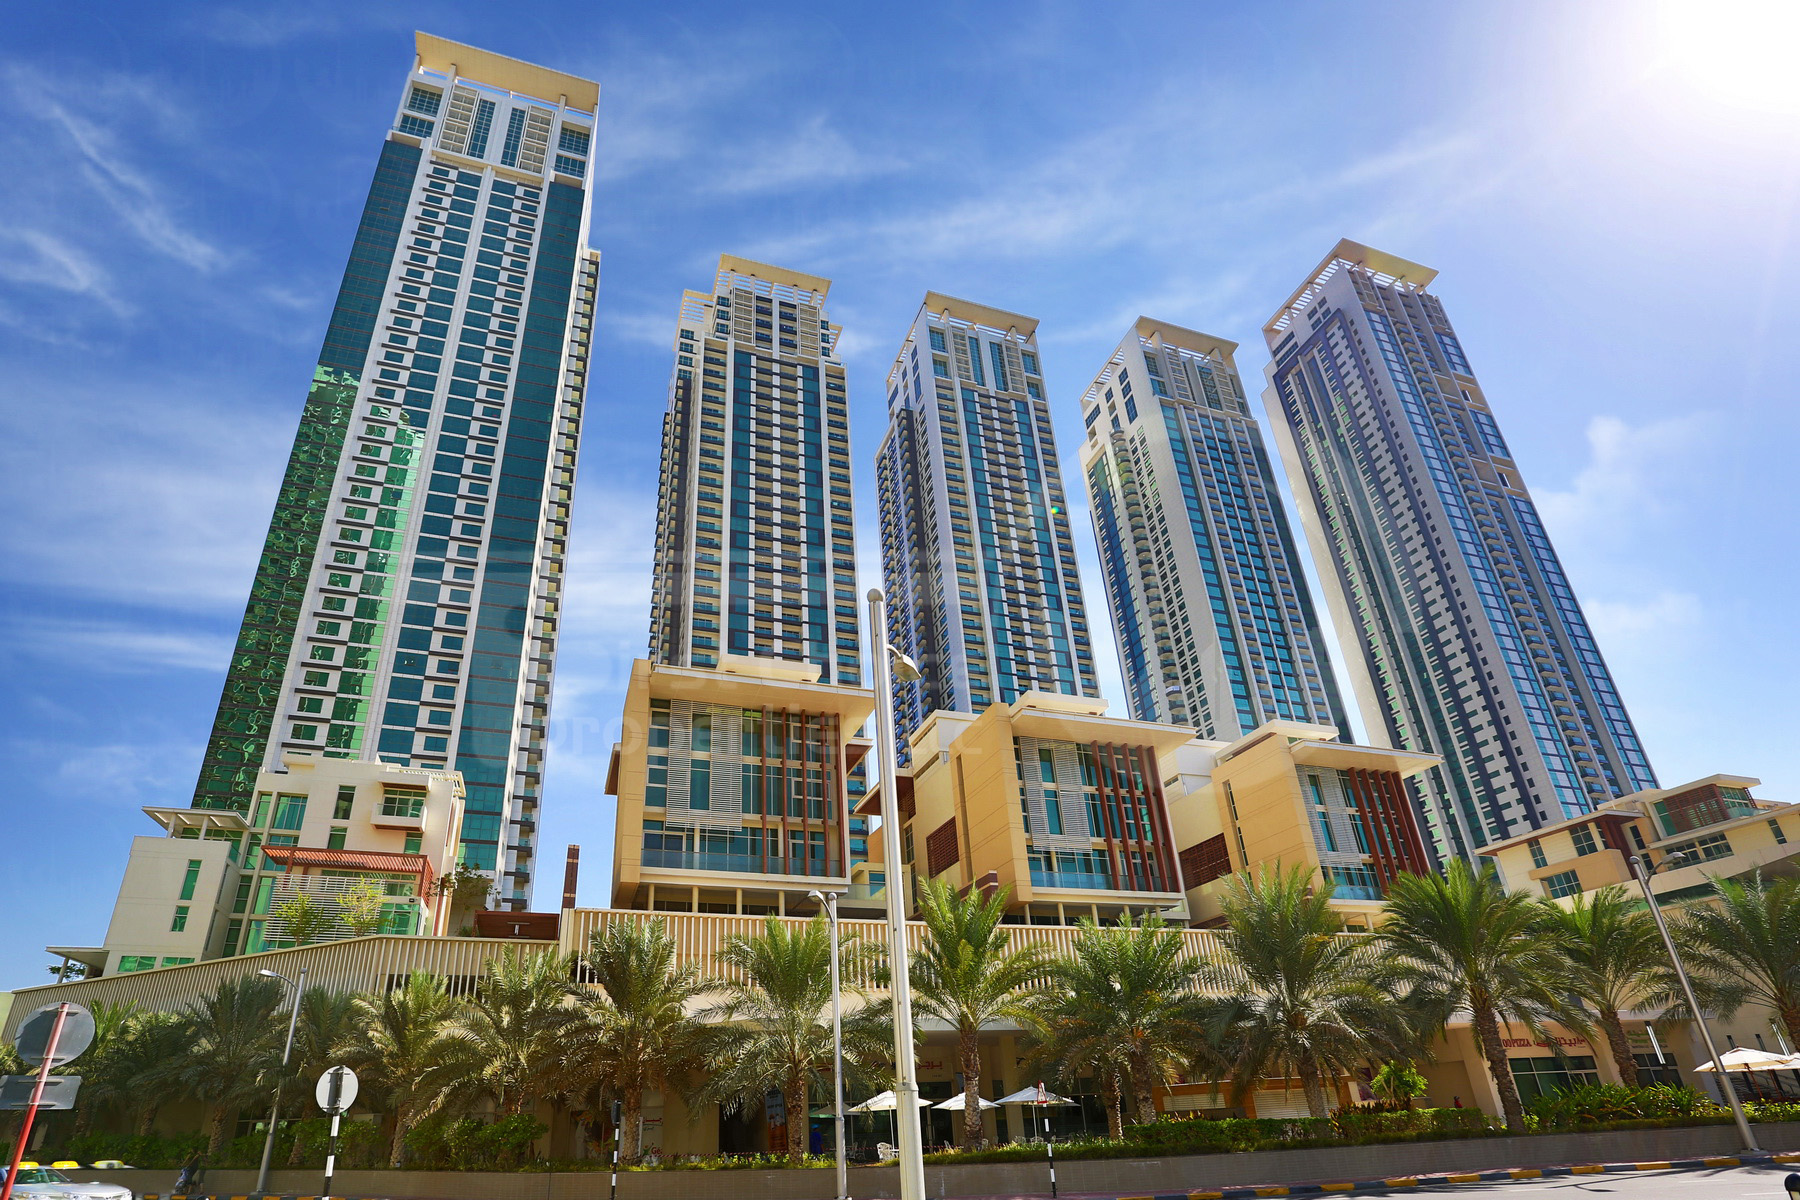 Studio - 1BR - 2BR - 3BR - 4BR Apartment - Abu Dhabi - UAE - Al Reem Island - Marina Square - Outside View (52).JPG